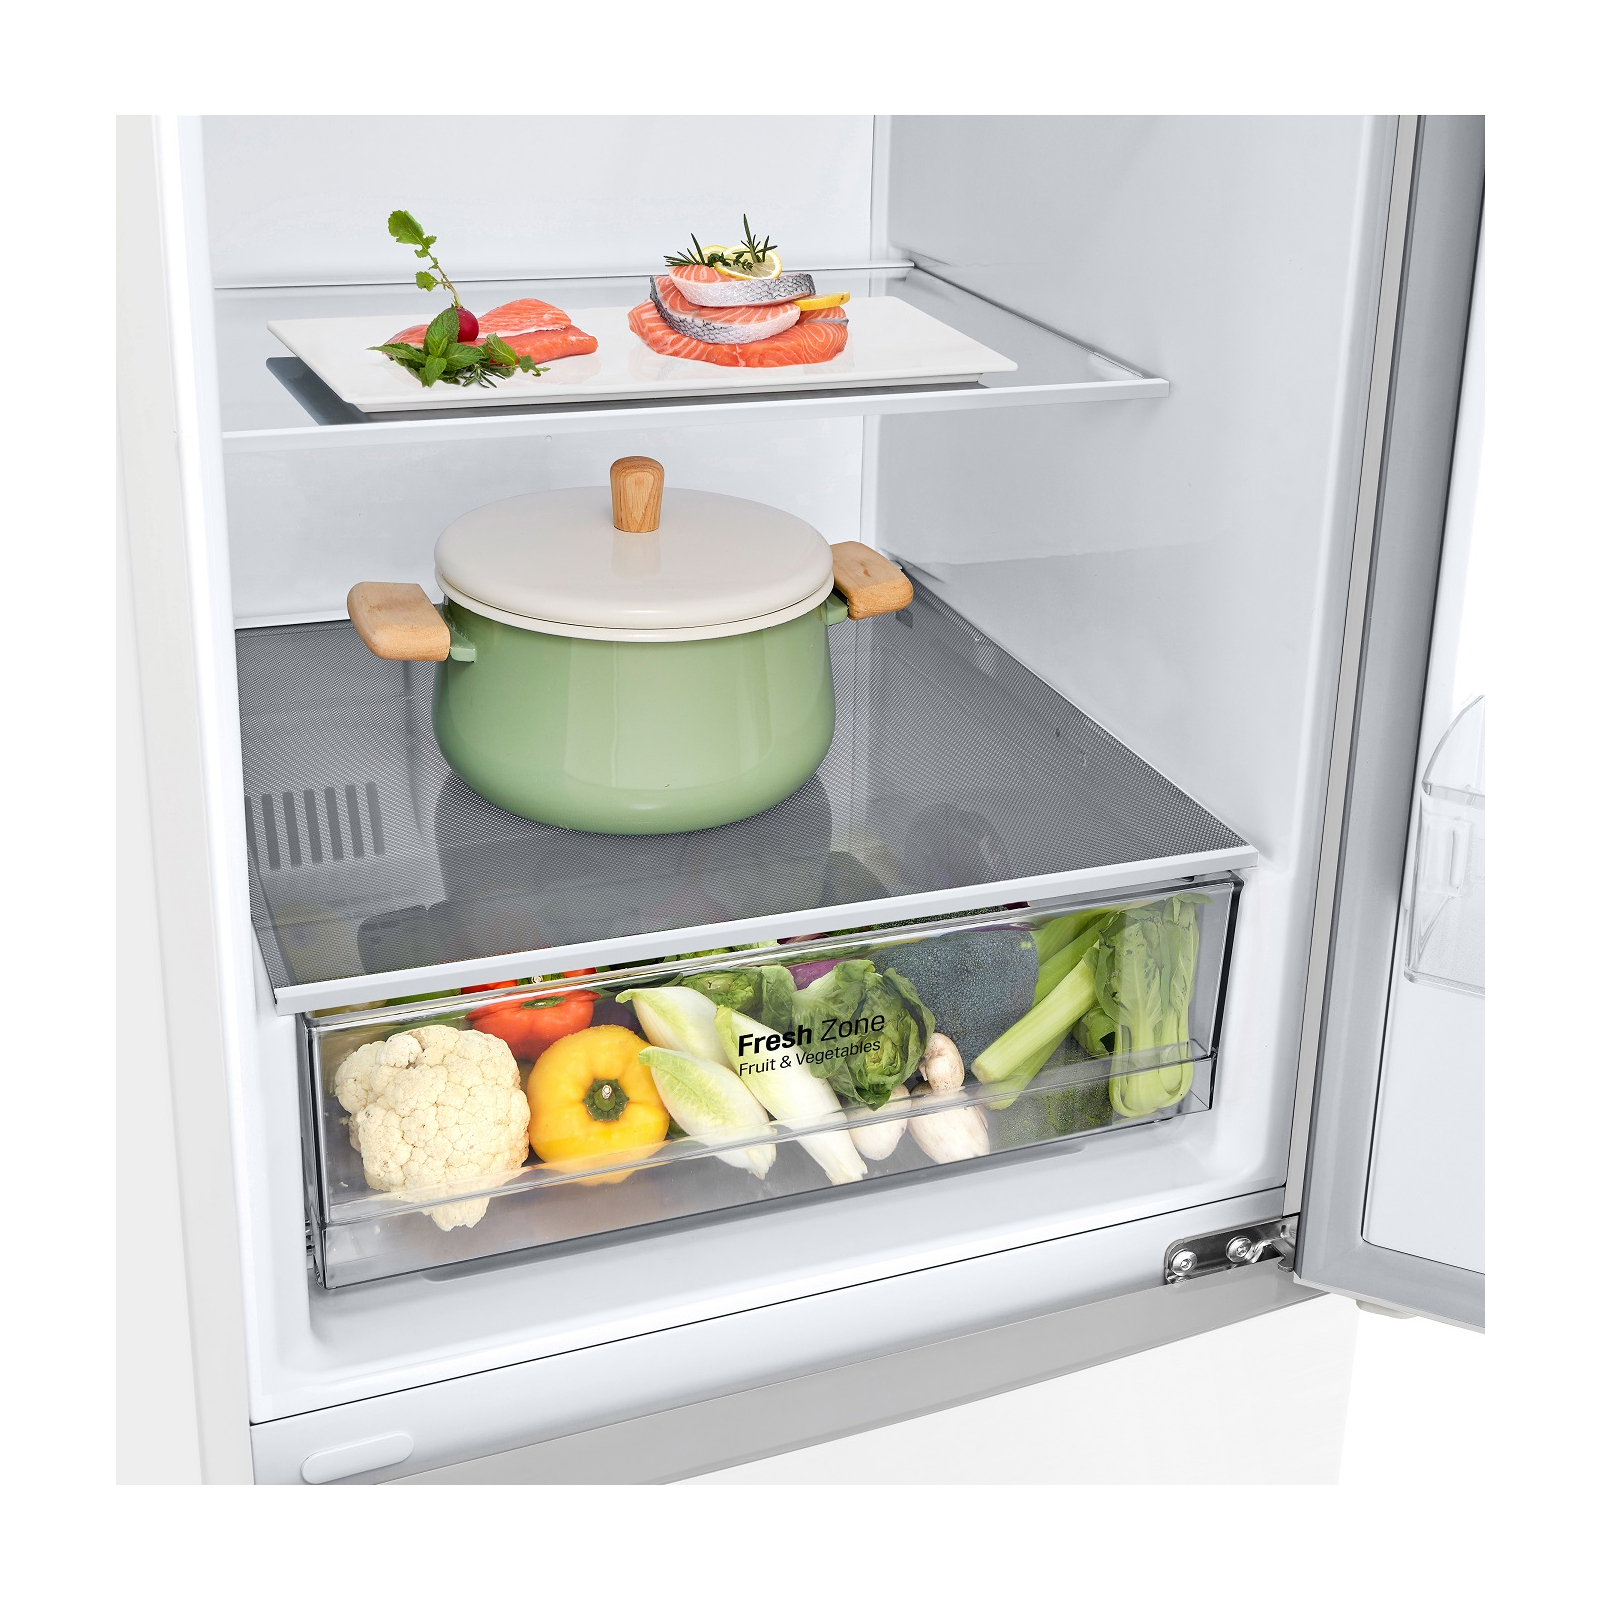 Холодильник LG GW-B509CQZM изображение 8